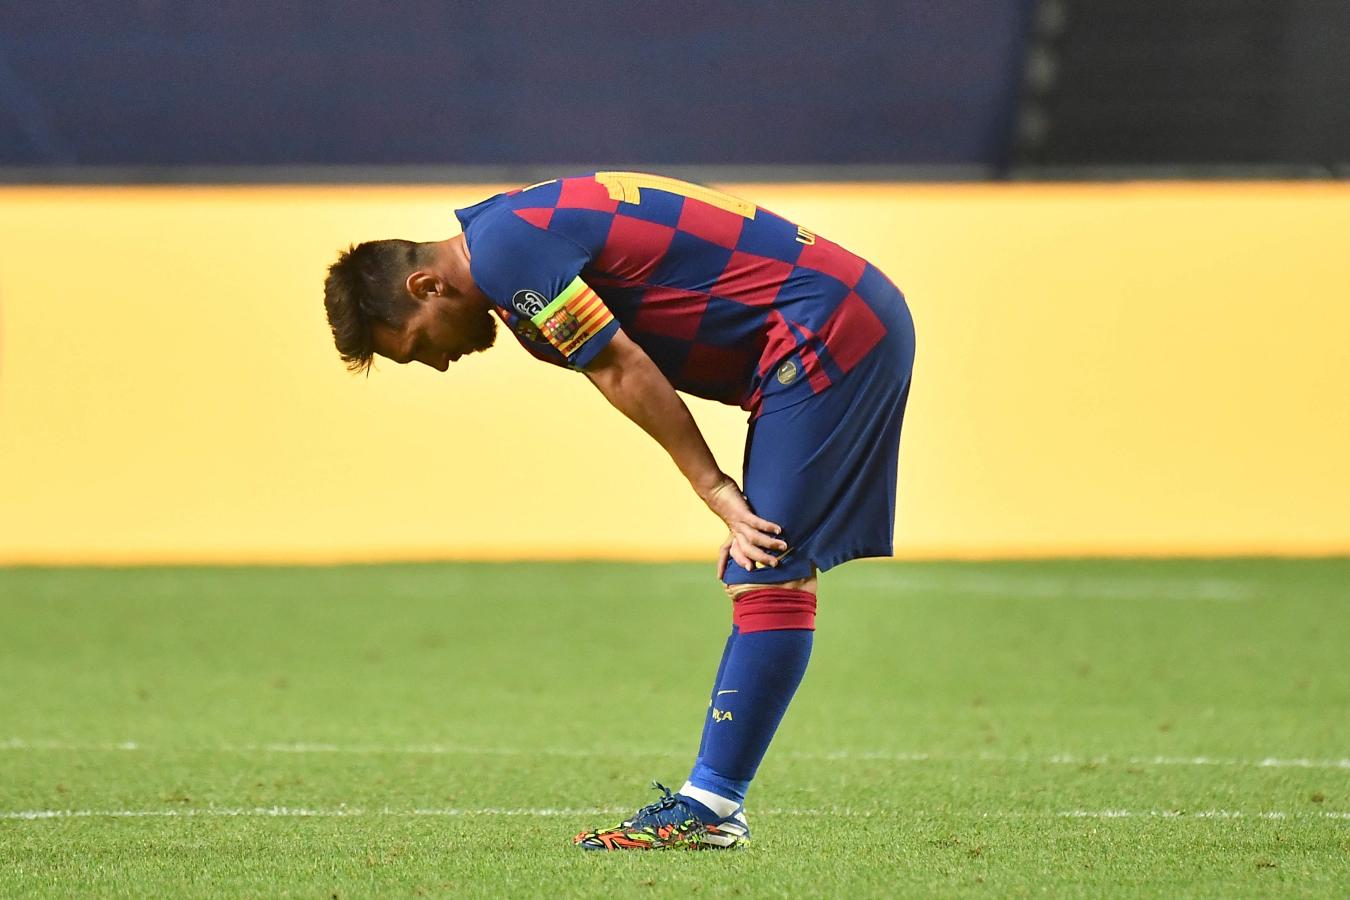 Imagen La frustración de Messi, luego del humillante 2-8 en la Champions 2020 contra Bayern Munich (AFP)